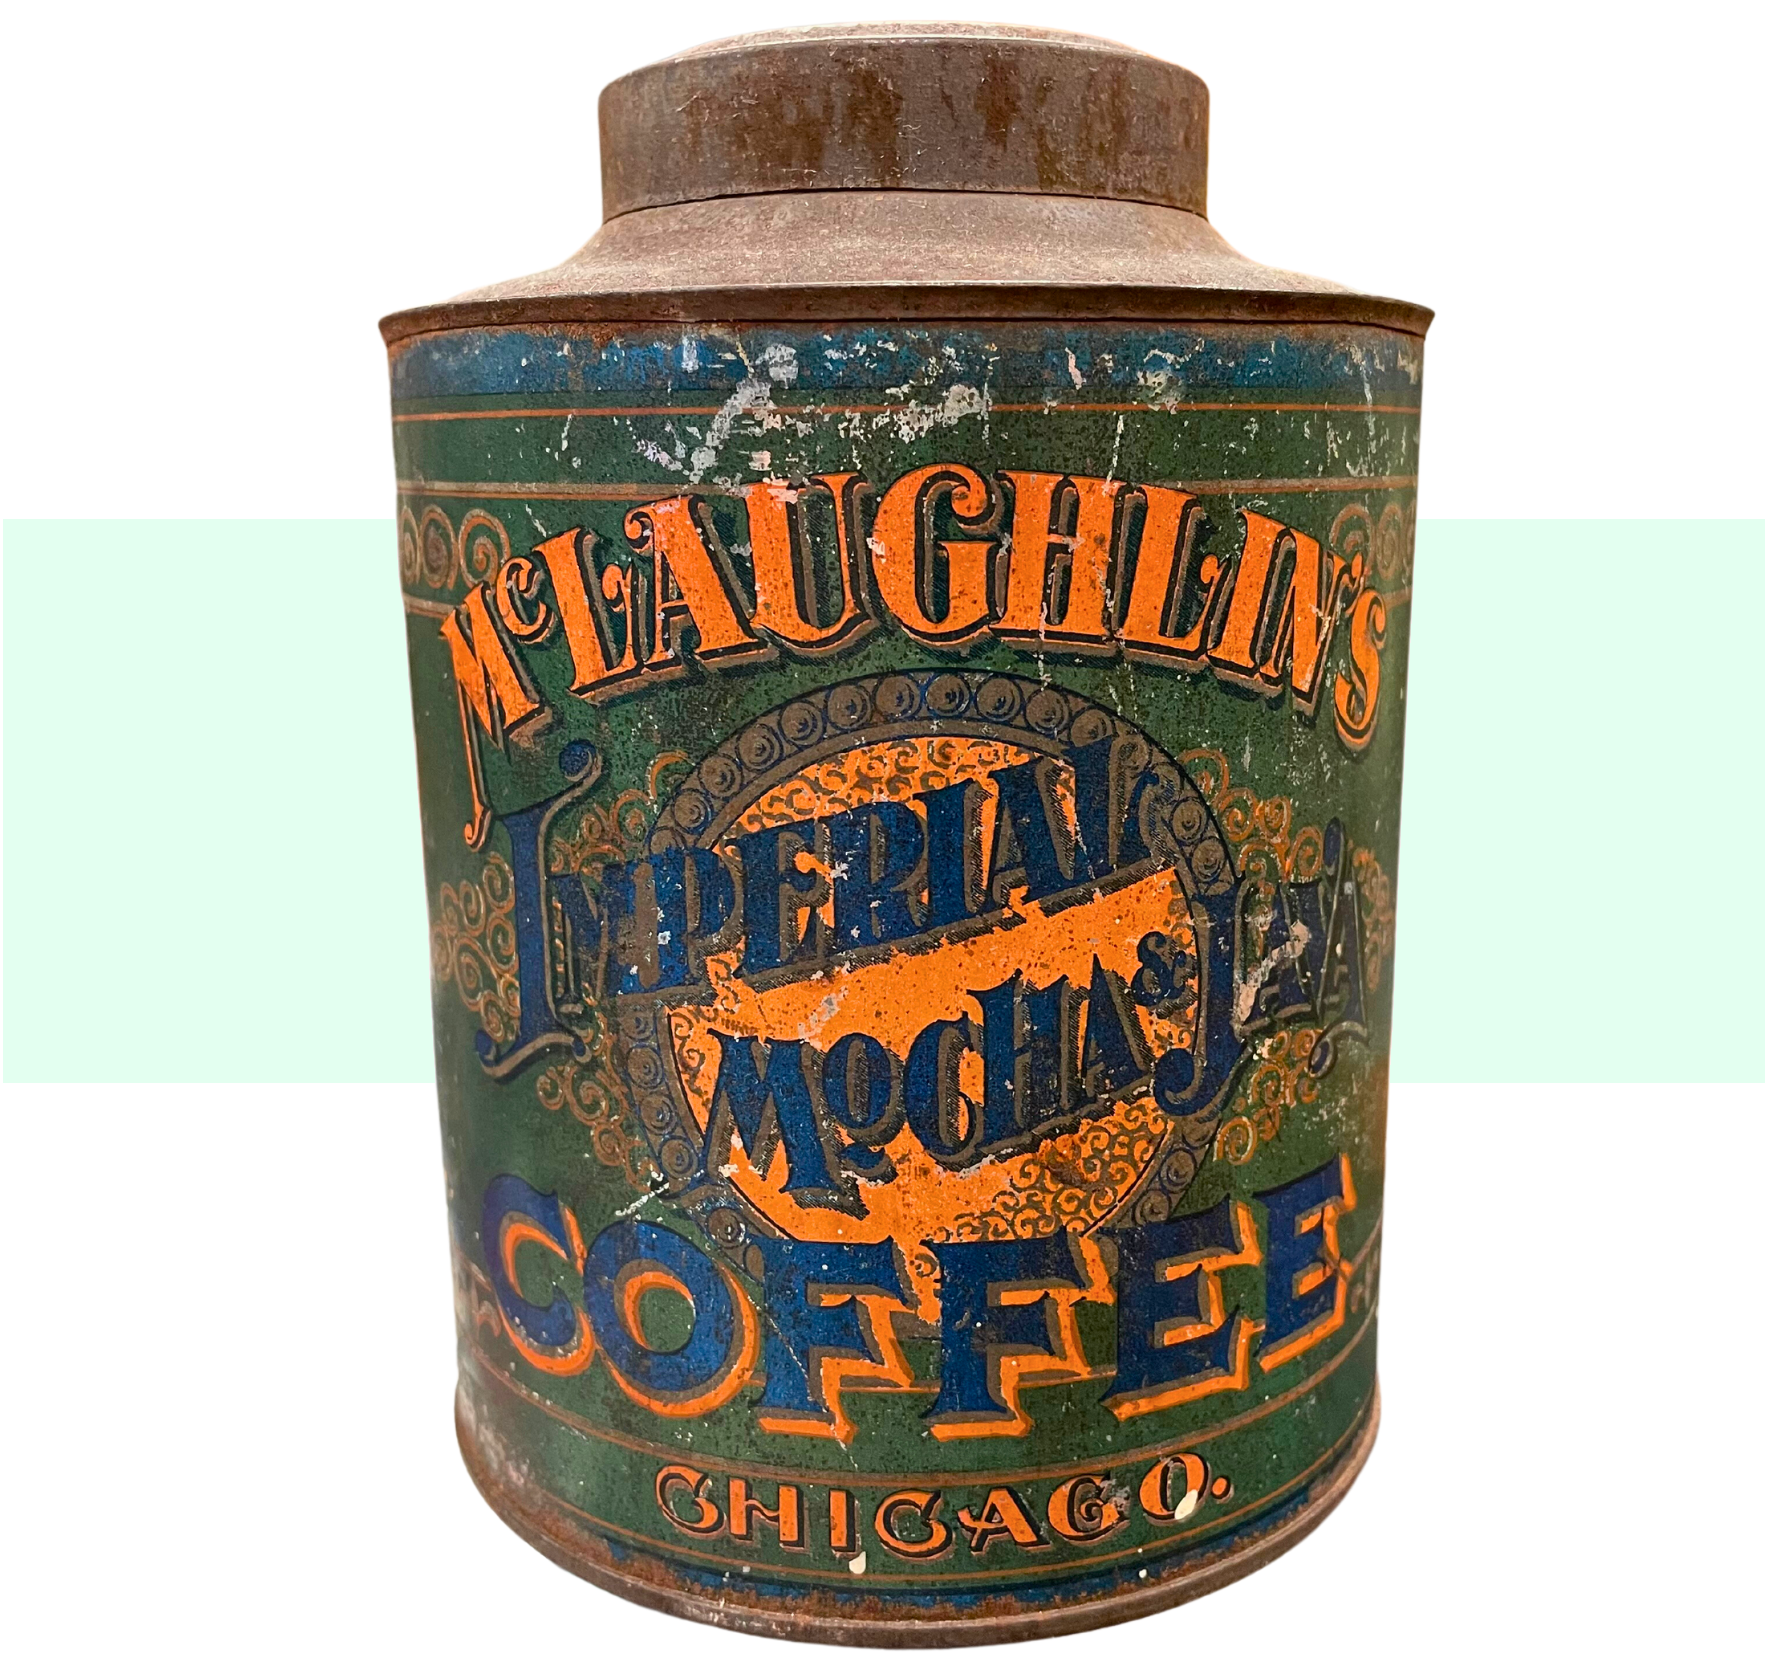 W. F. McLaughlin & Co., est. 1852